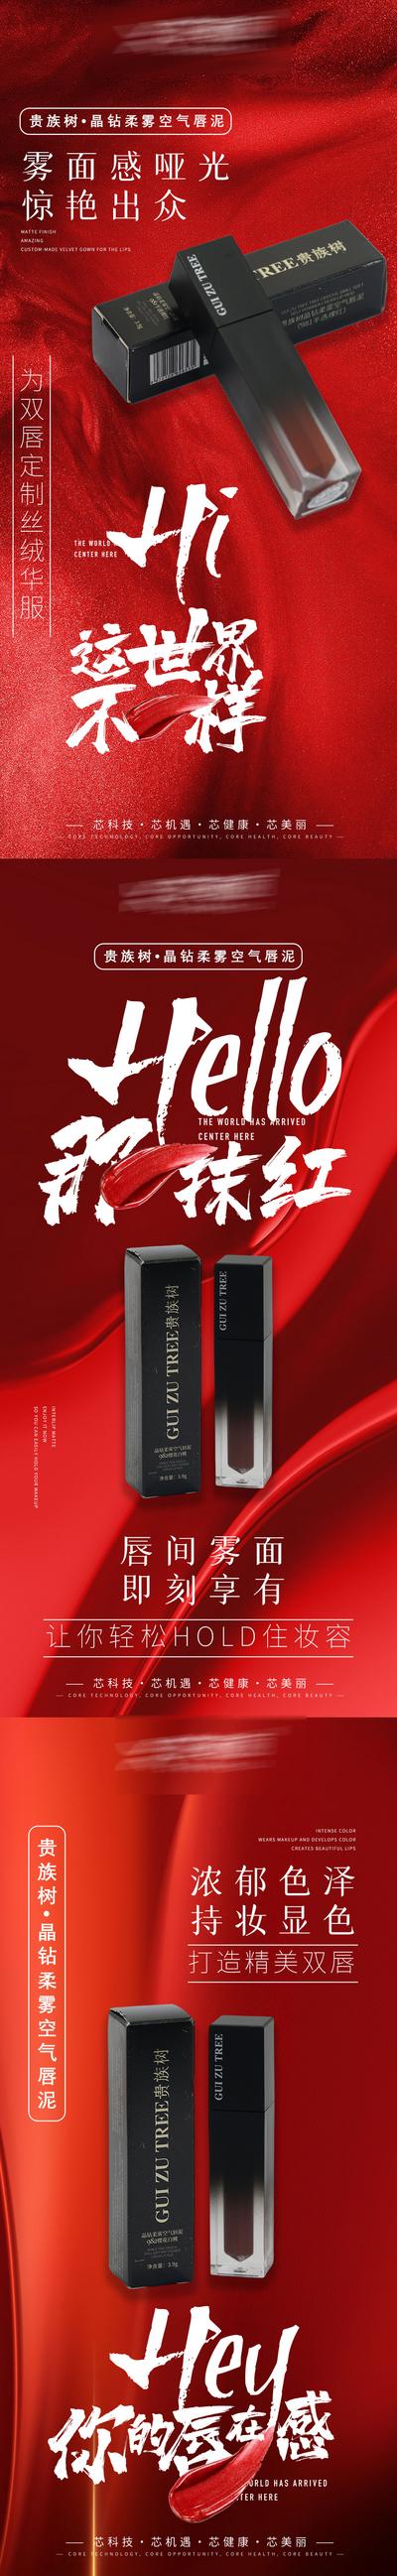 南门网 广告 海报 医美 口红 系列 简约 化妆品 美妆 美容 唇泥